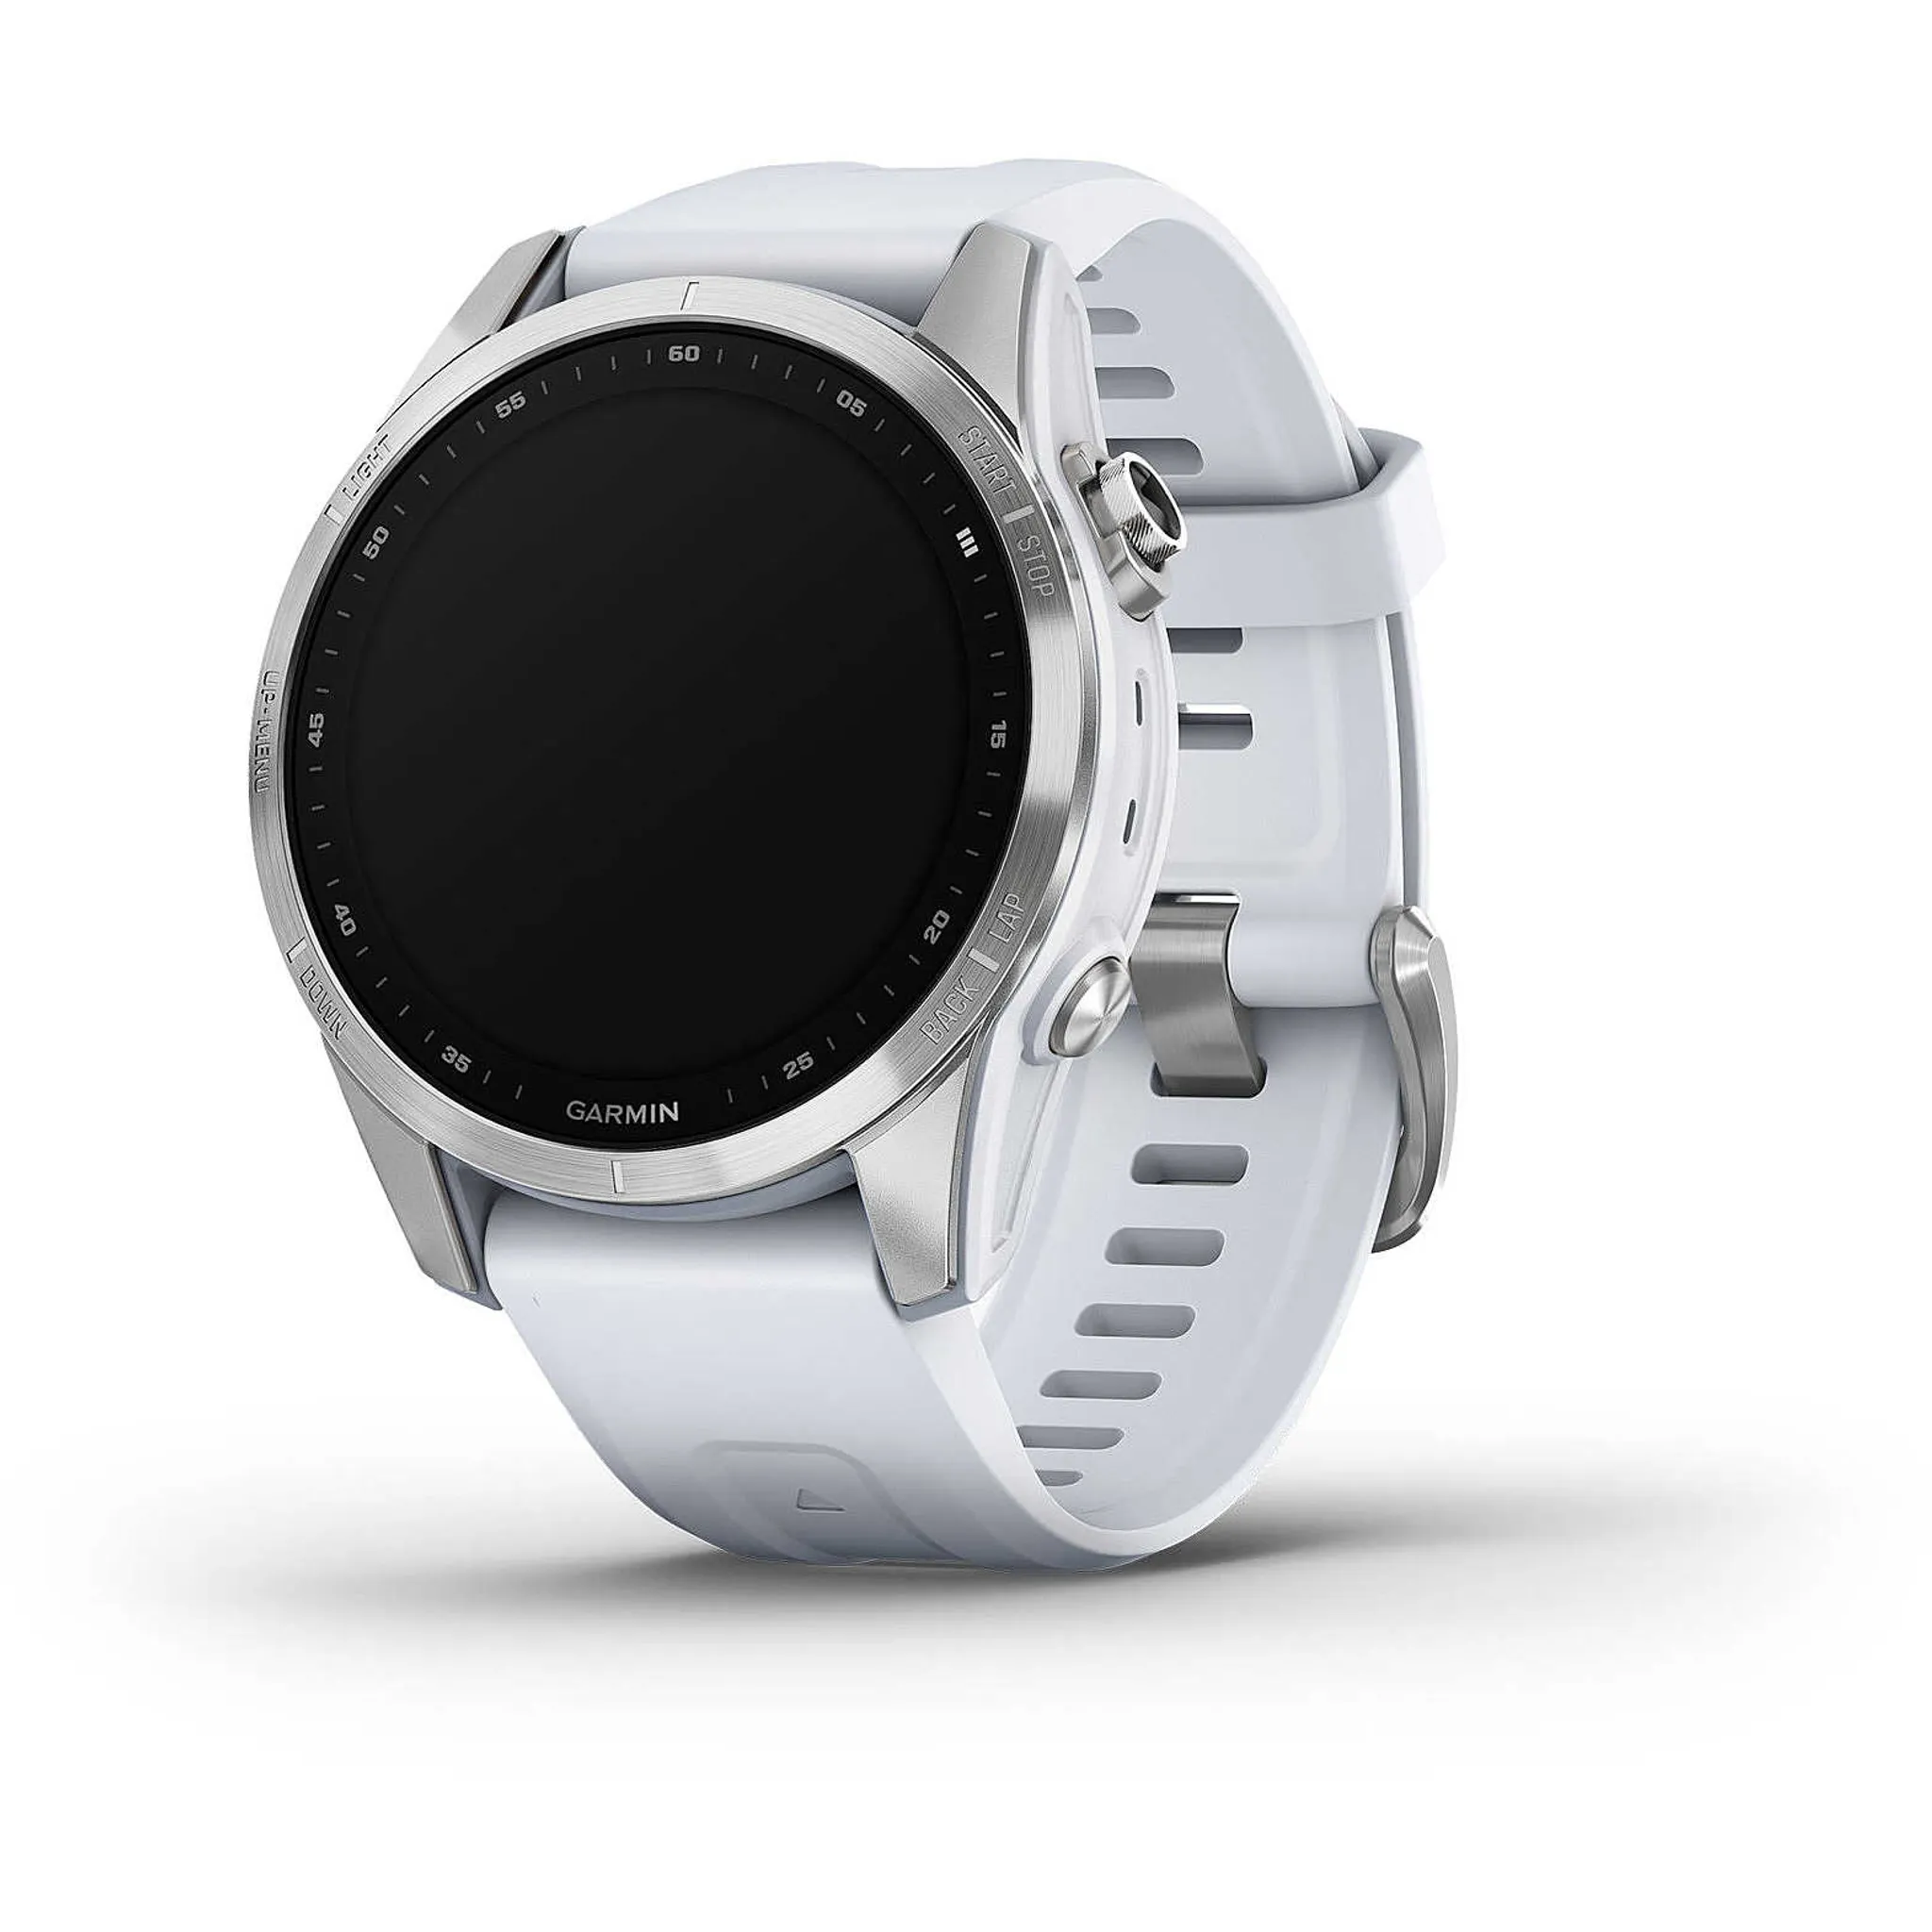 steinweiß/silber 7S Garmin fenix Smartwatche